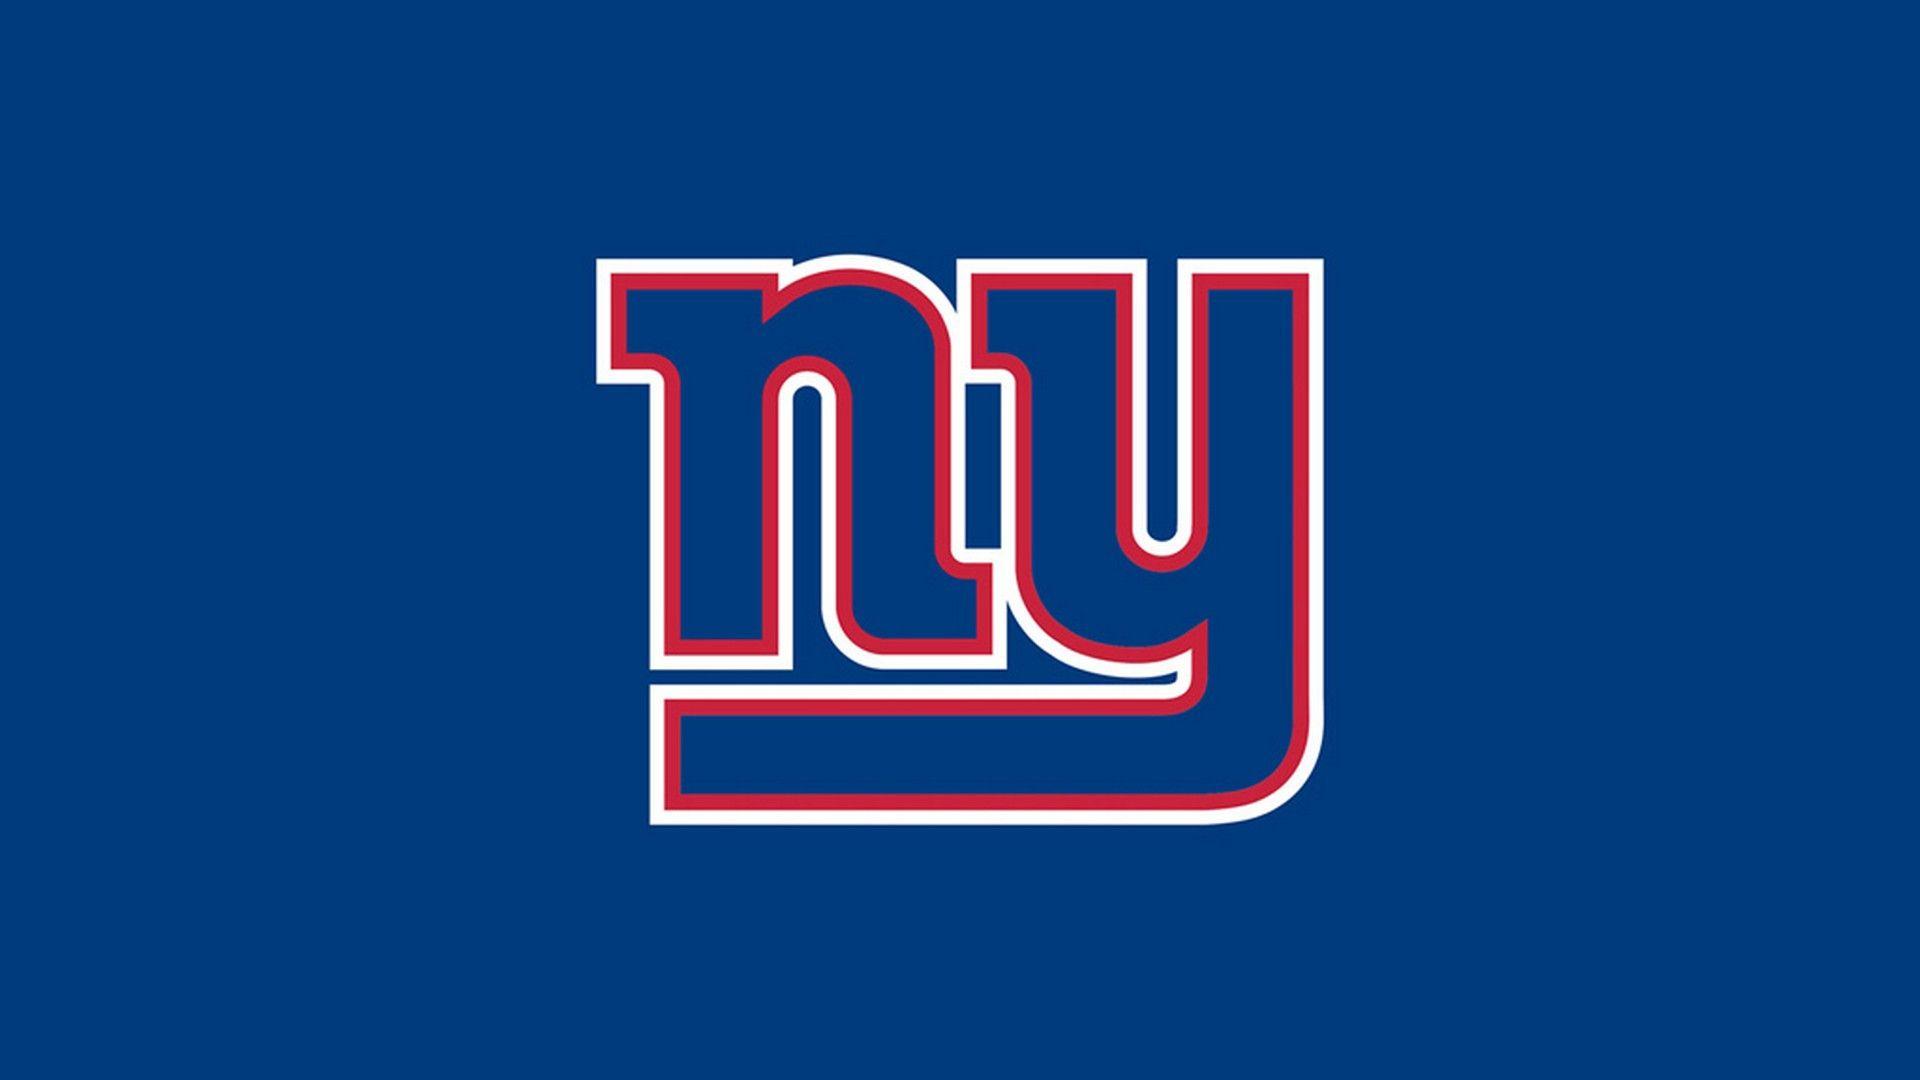 New York Giants Desktop Wallpaper NFL Football Wallpaper. Ny giants, New york giants football, New york giants logo